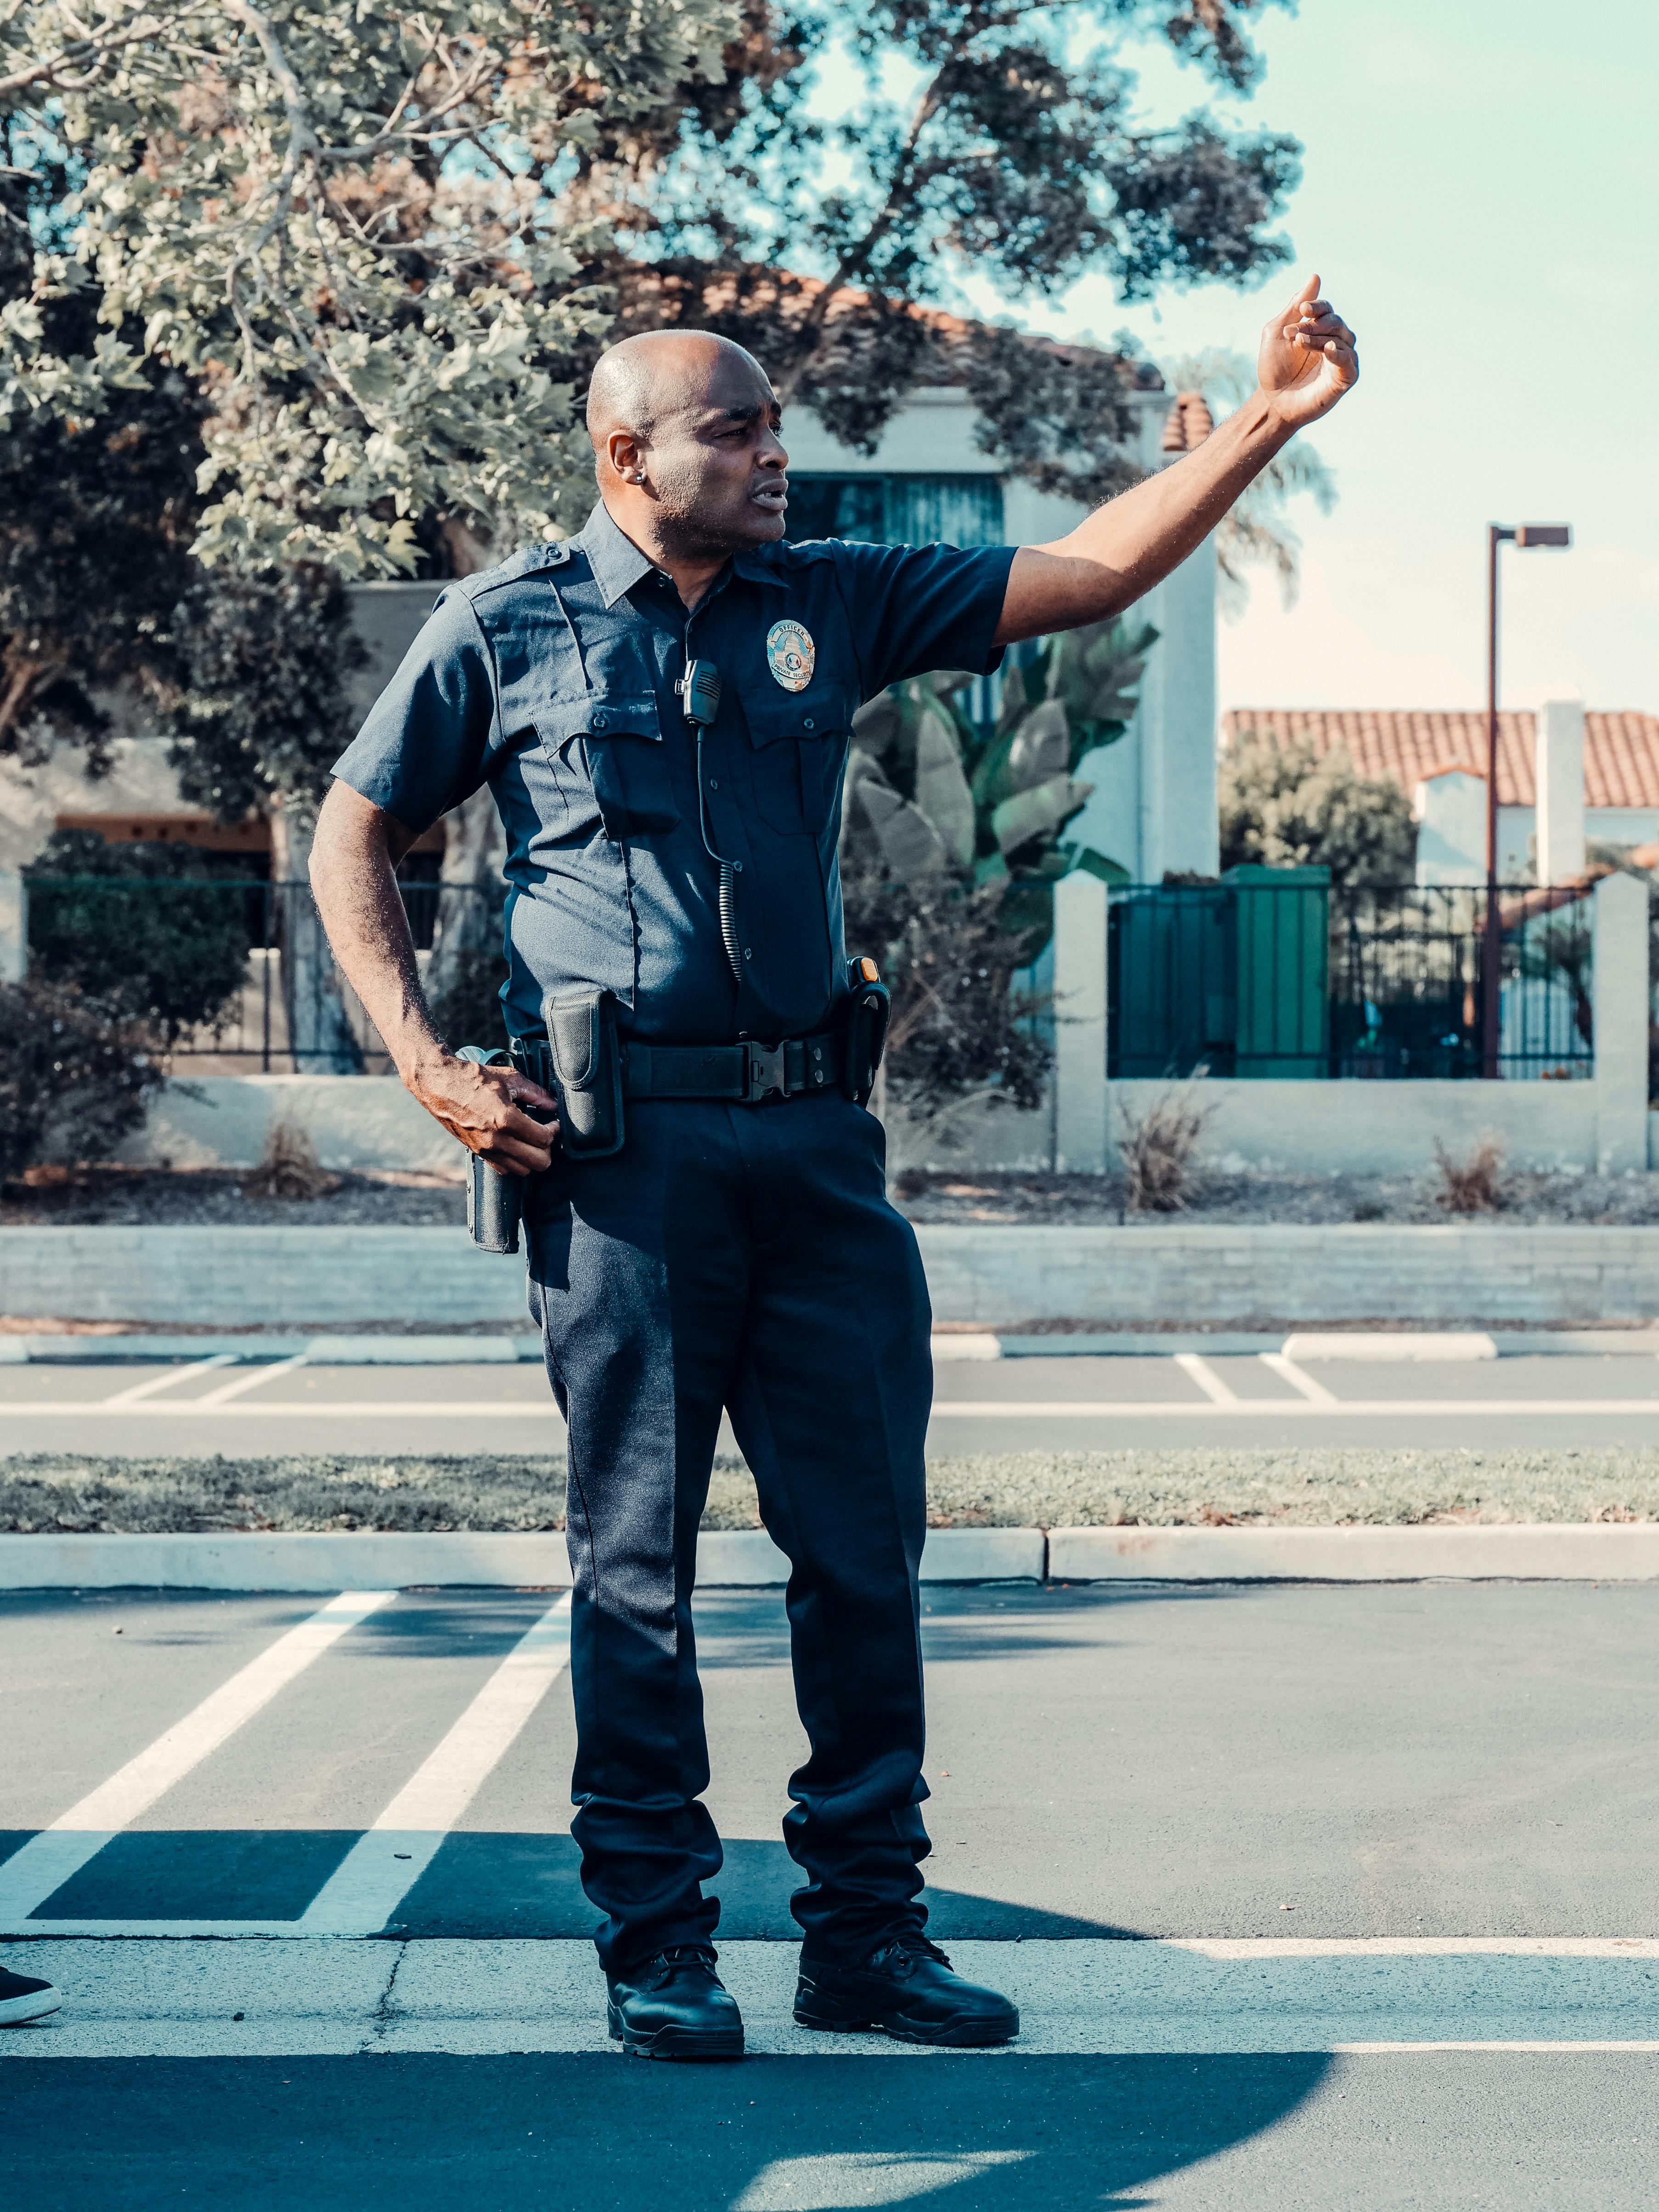 Un policier qui donne un ordre | Source : Pexels